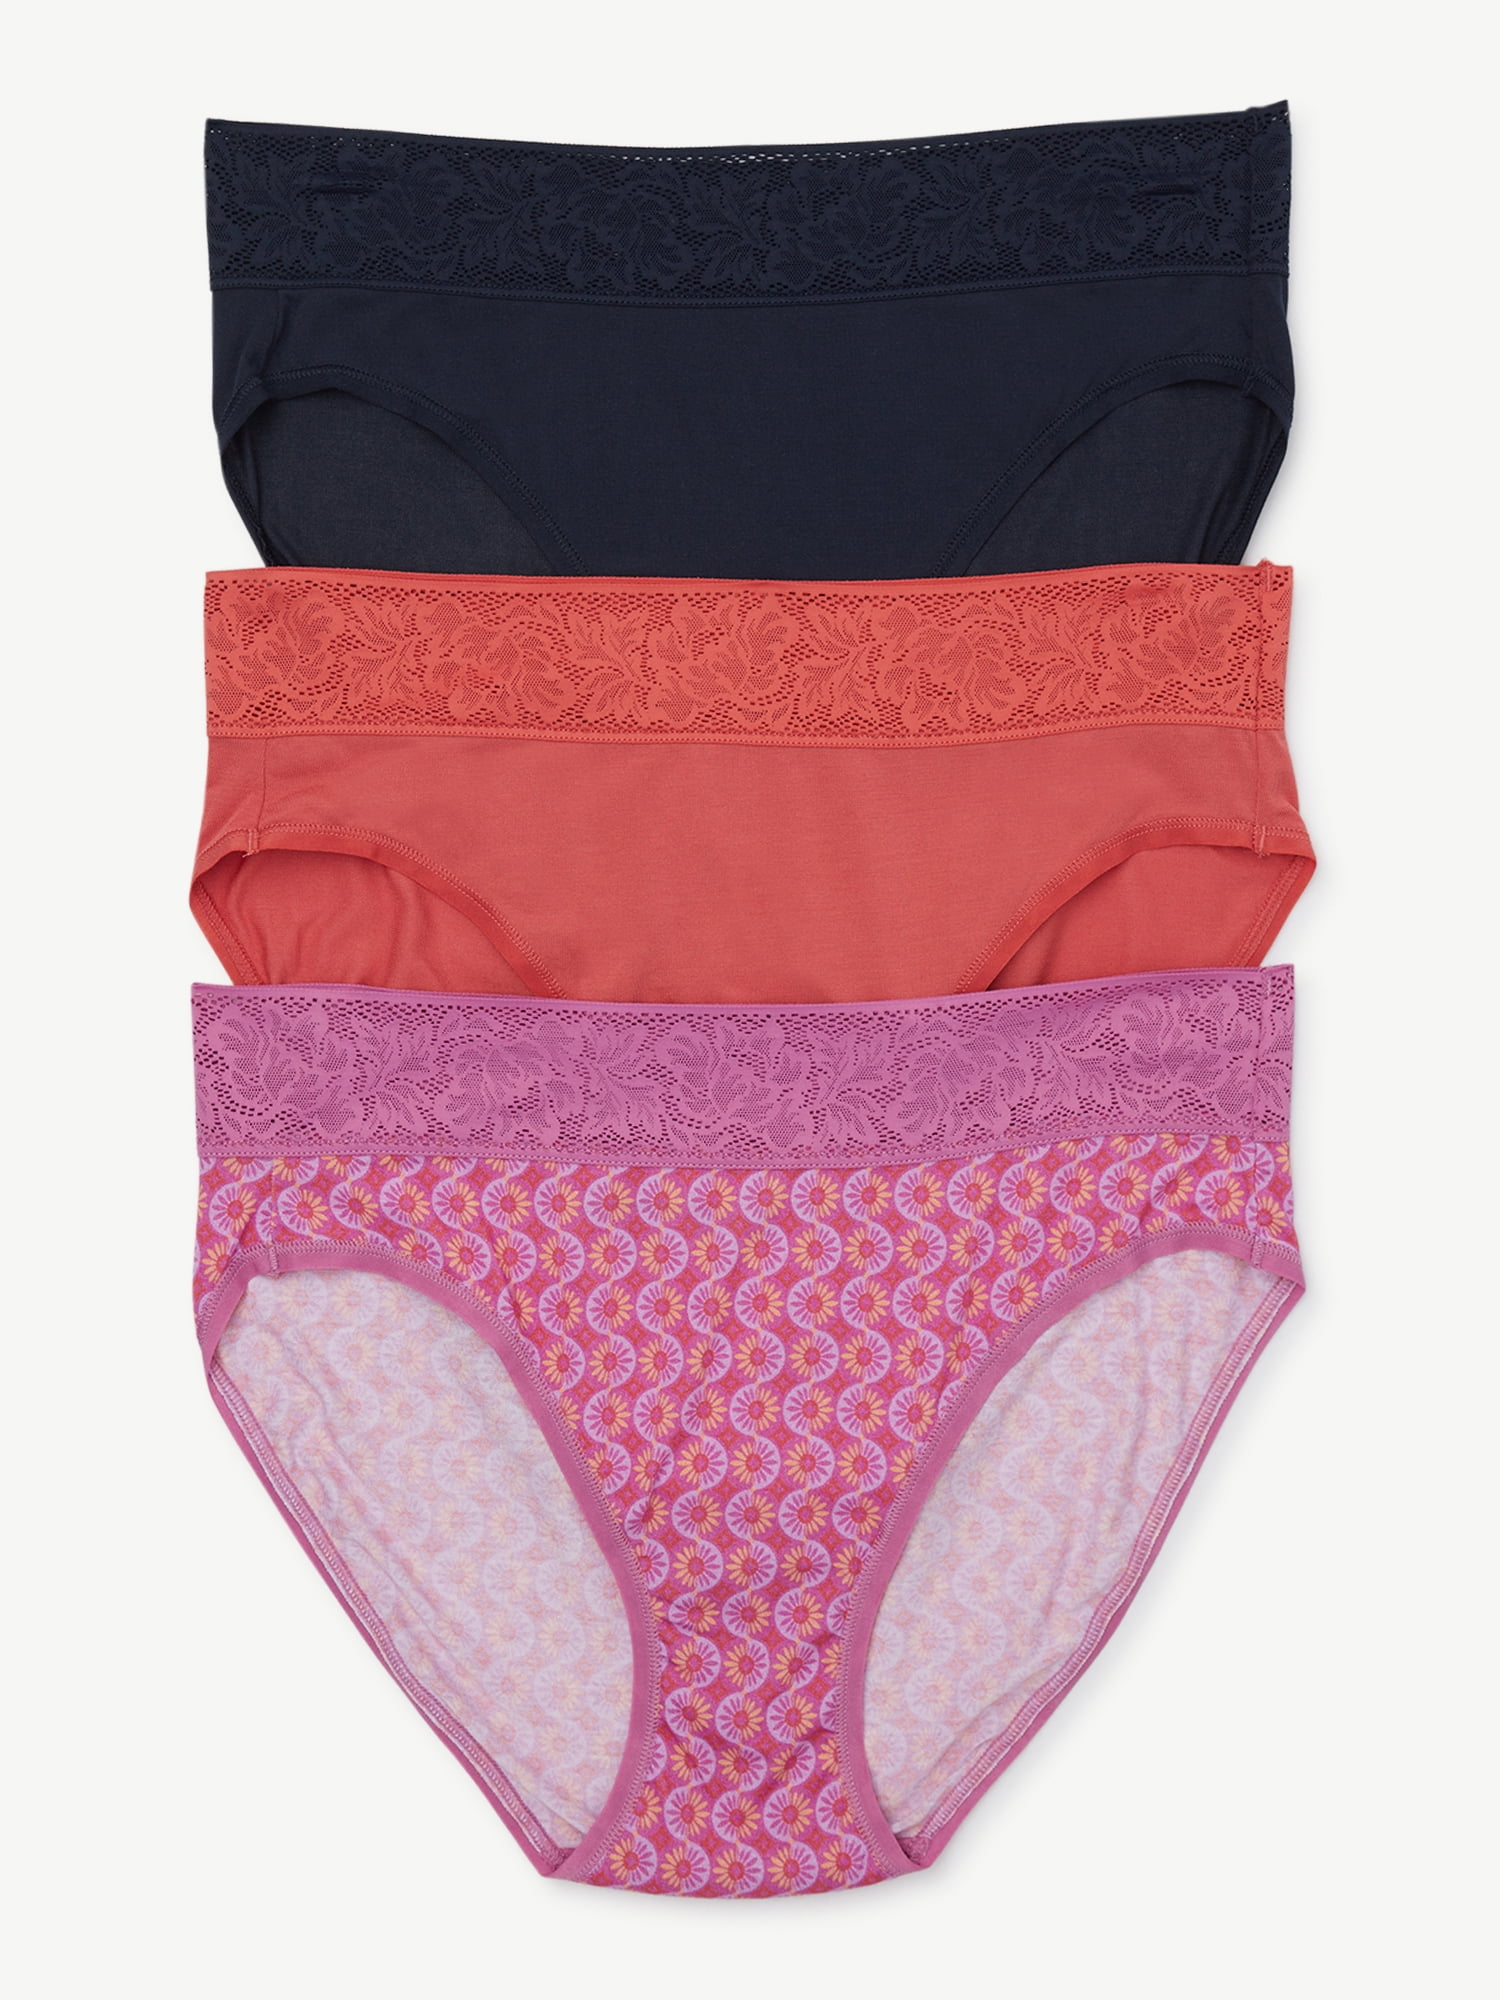 Joyspun Women's Modal and Lace Hi Cut Brief Panties, 3-Pack, Sizes